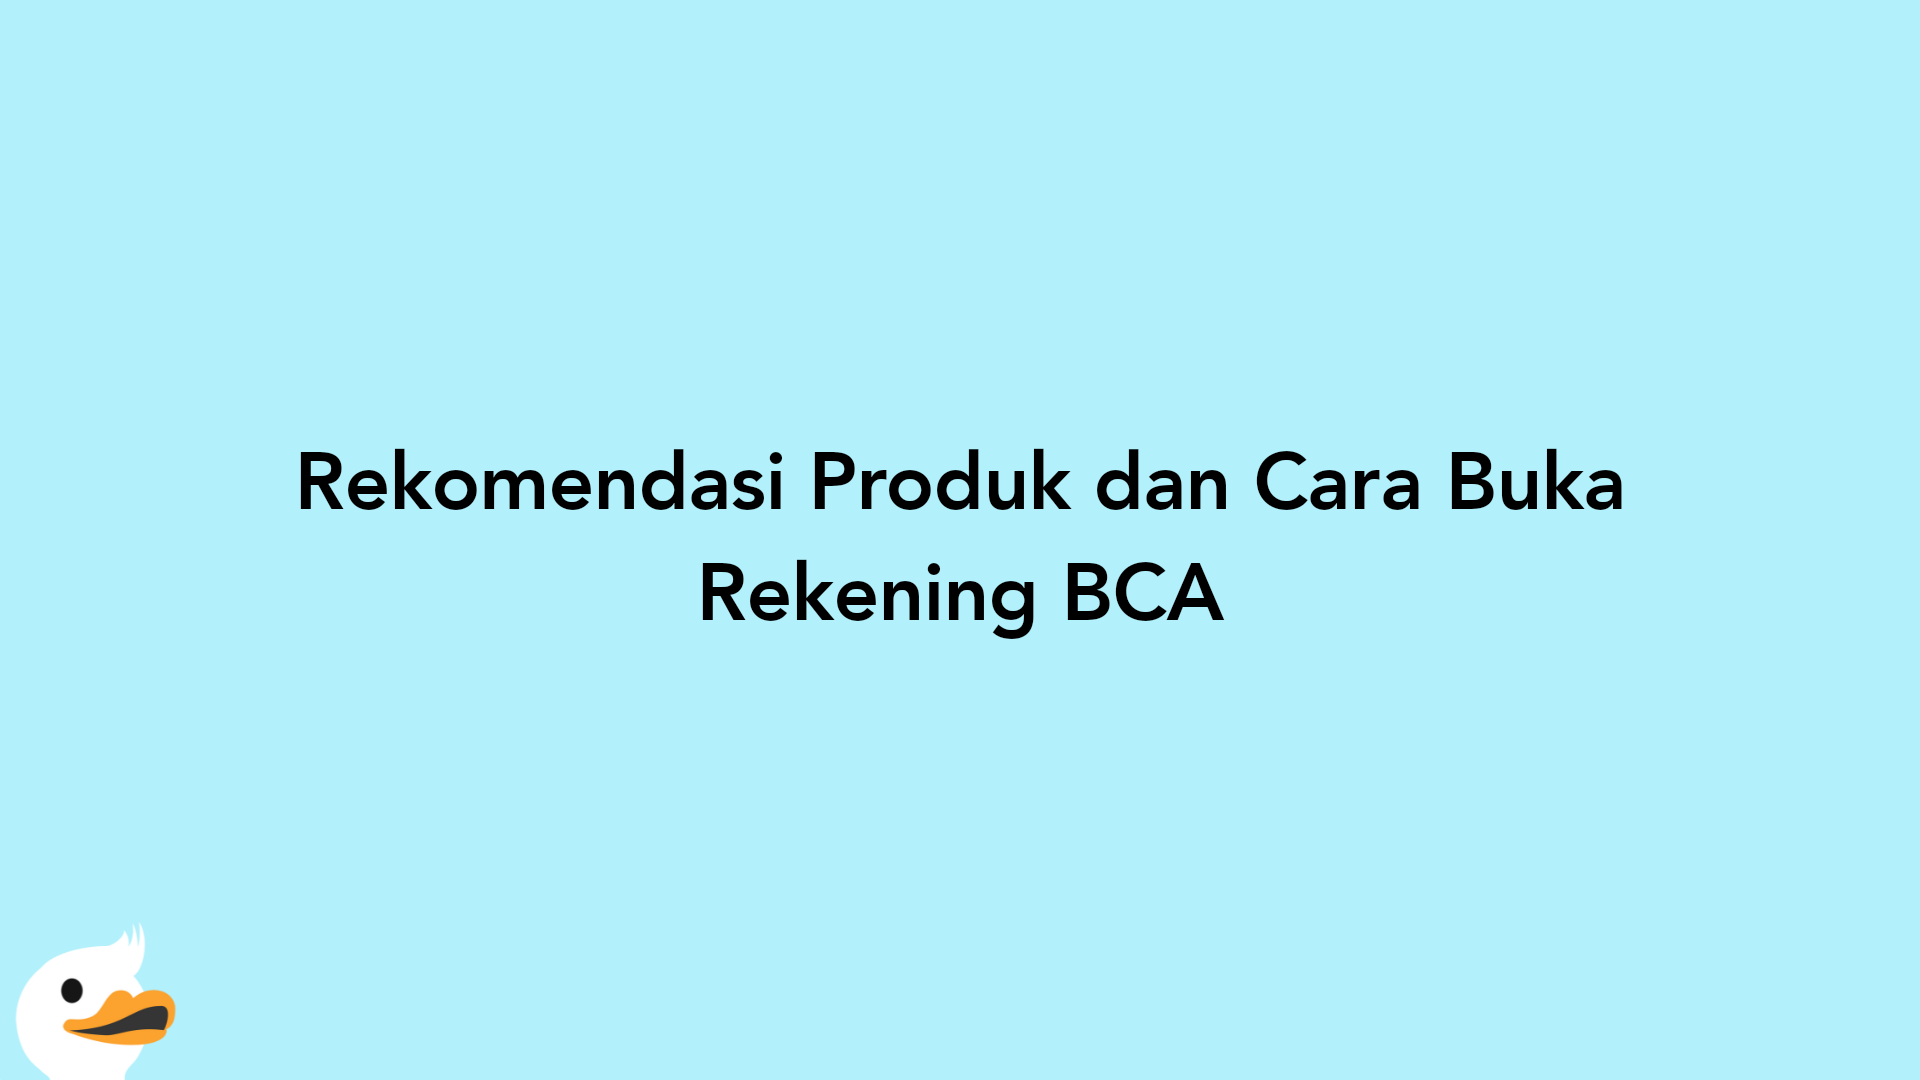 Rekomendasi Produk dan Cara Buka Rekening BCA